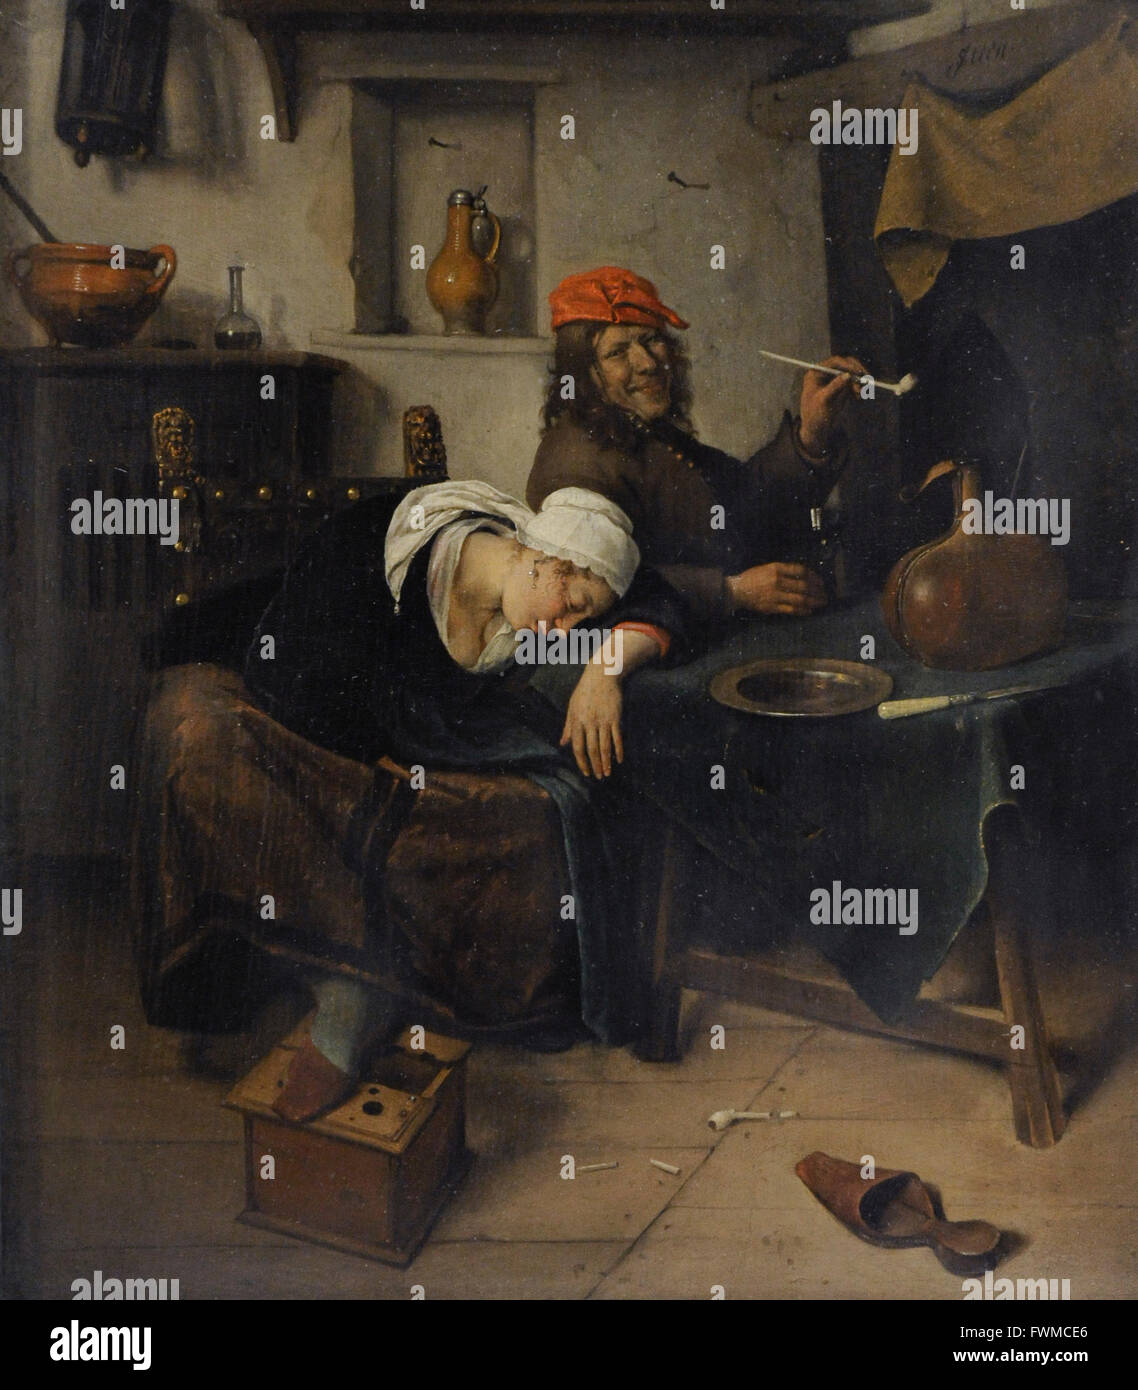 Havickszoon Jan Steen (1626-1679). Peintre hollandais. Les fêtards, 1660. Le Musée de l'Ermitage. Saint Petersburg. La Russie. Banque D'Images